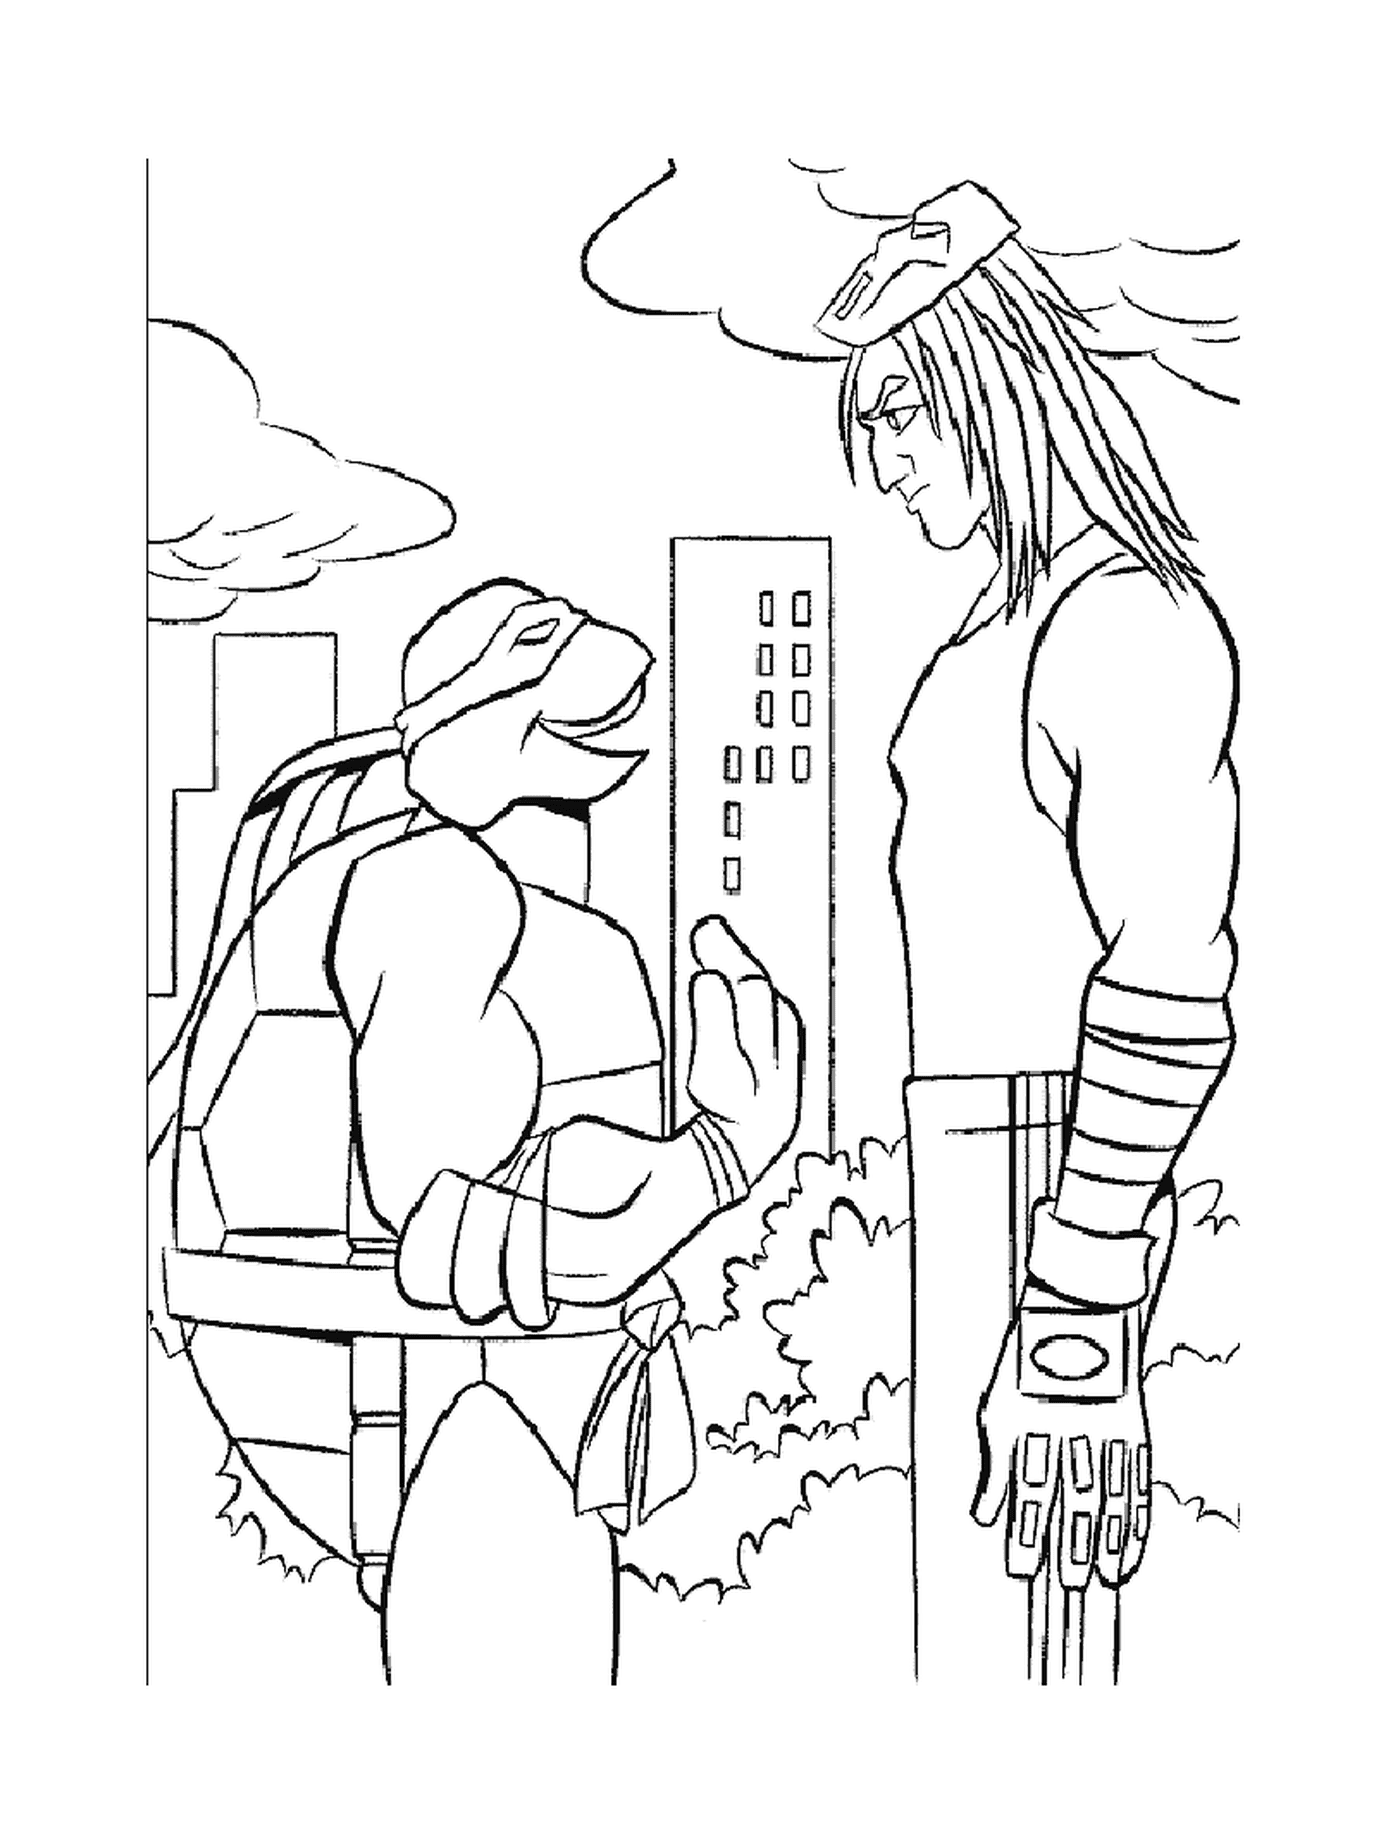  Ninja Schildkröte spricht mit einem Mann 